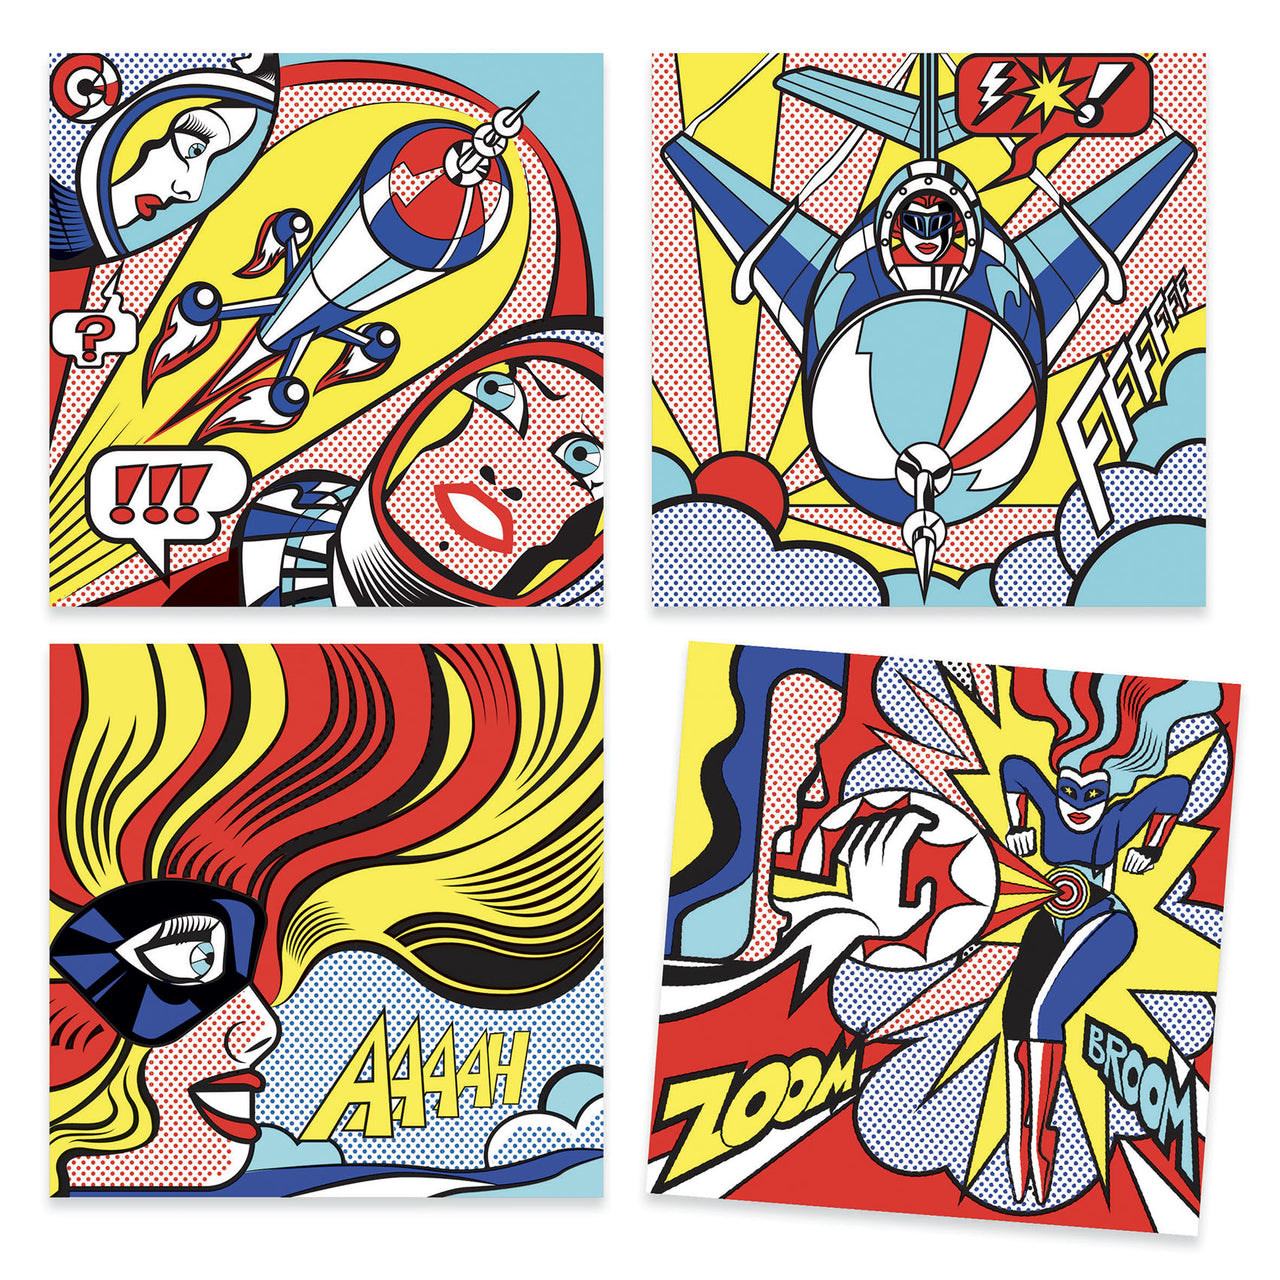 Heroes - Pop Art Inspired by Roy Lichtenstein